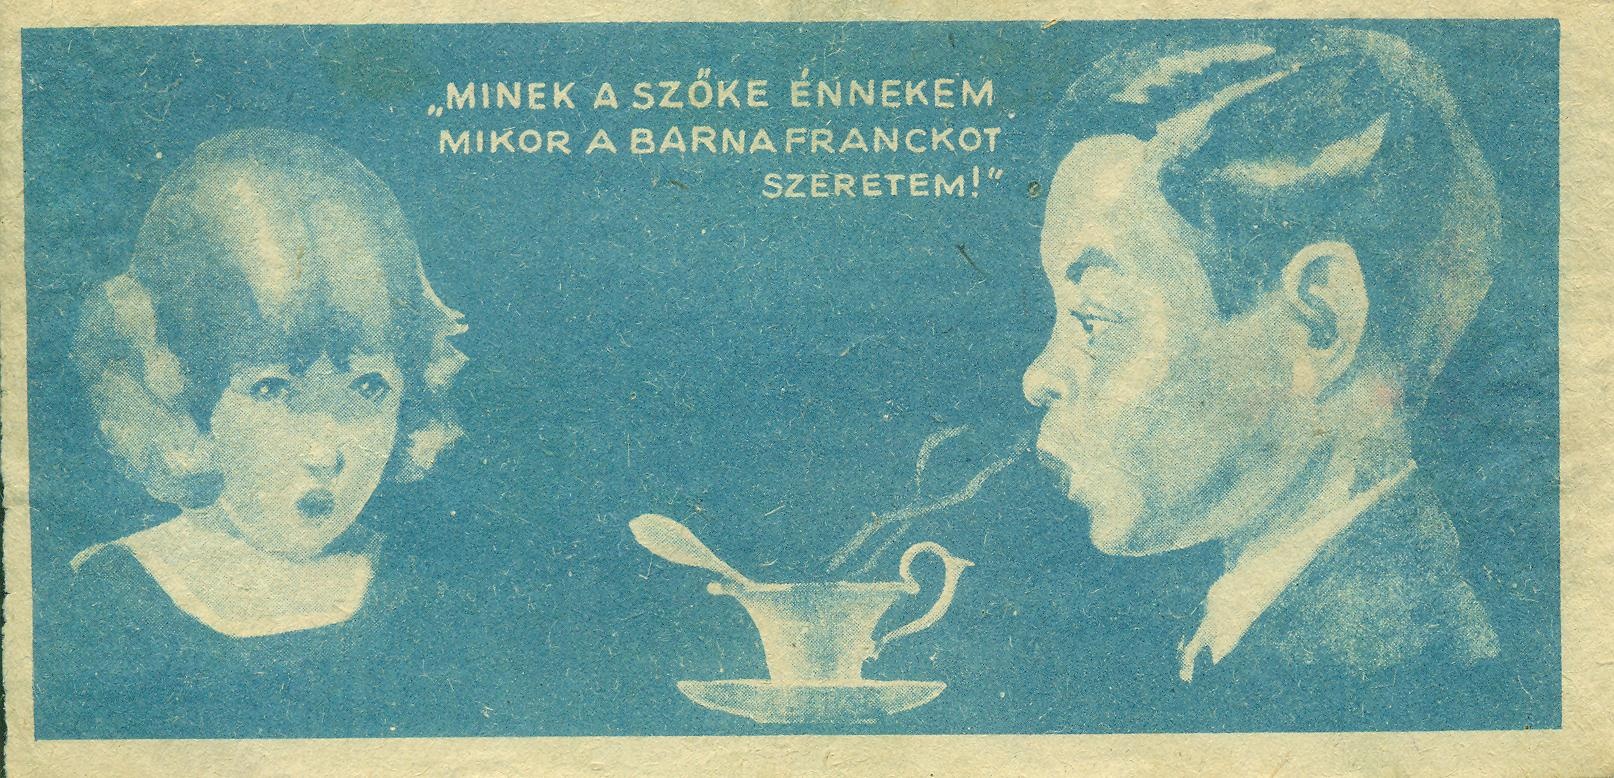 Franck kávépótlék (Magyar Kereskedelmi és Vendéglátóipari Múzeum CC BY-NC-SA)